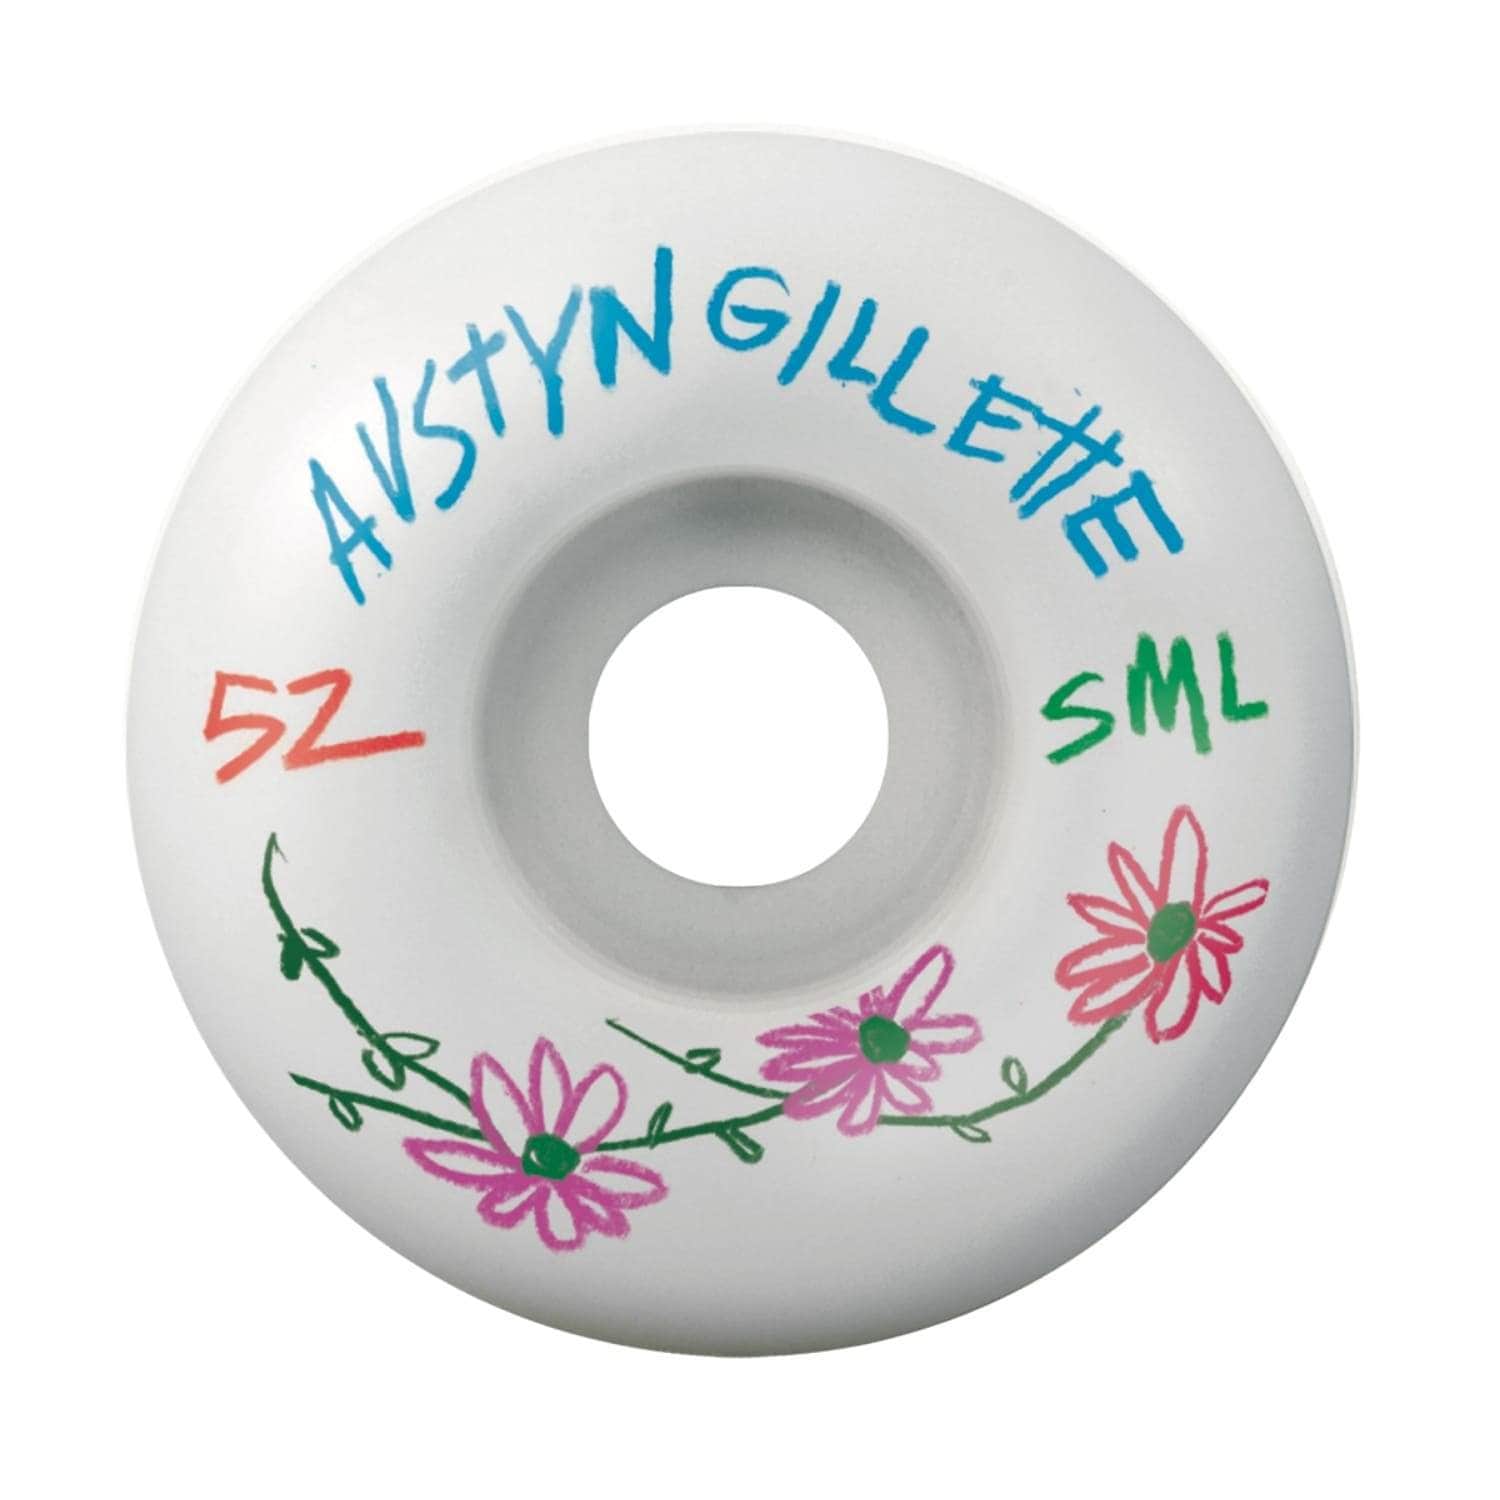 SML Wheels Gillette Pencil Pushers Skateboard Wheels White - Skateboard Wheels by SML Wheels 52mm